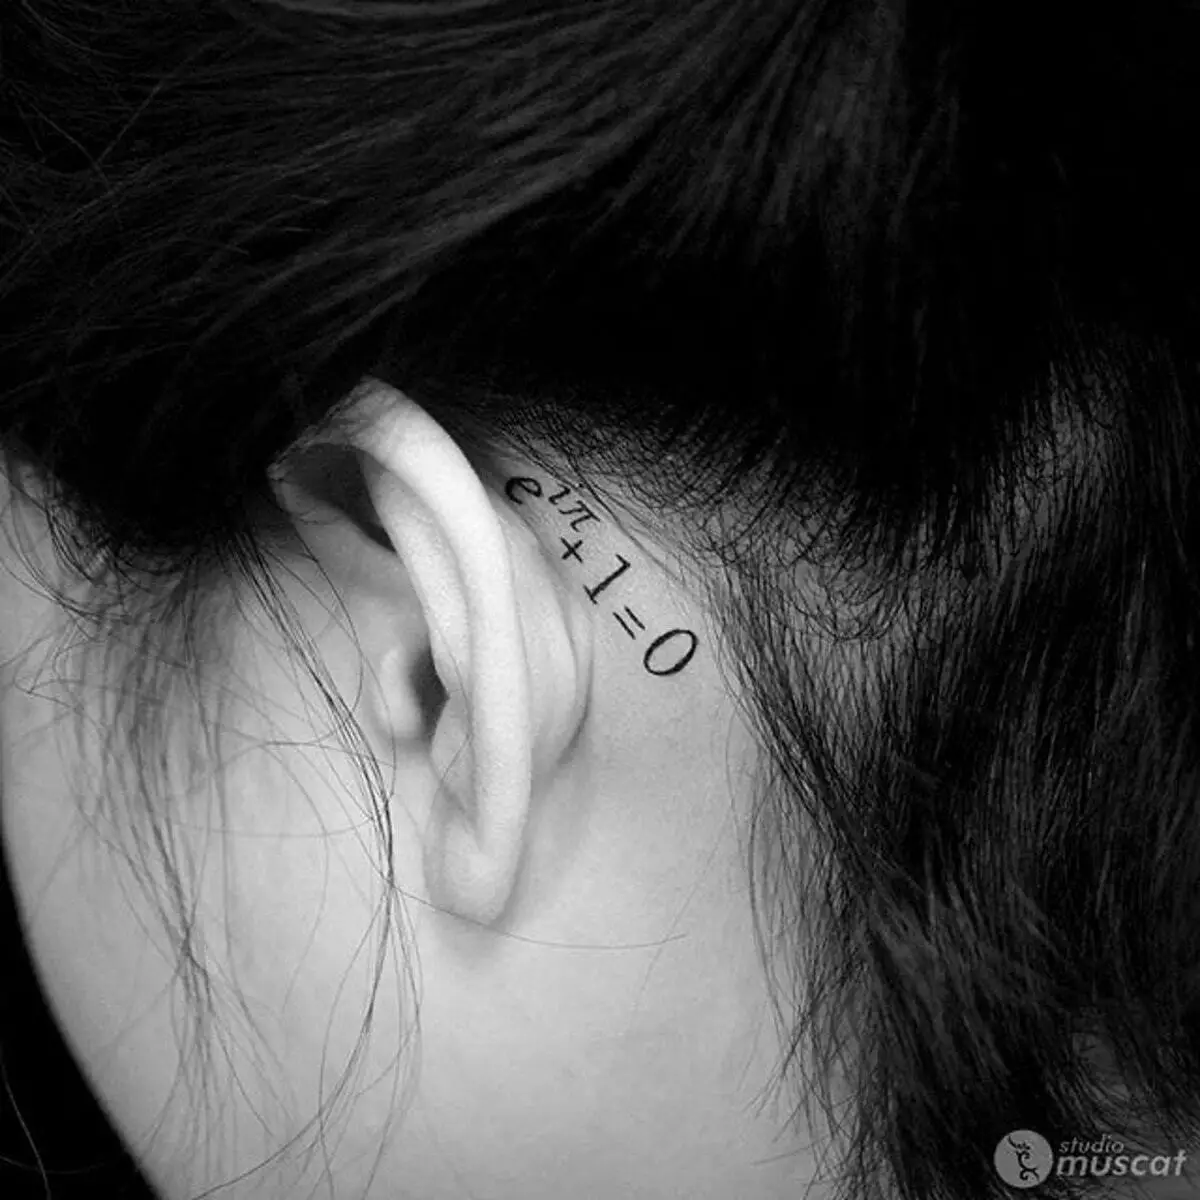 लड़कियों के लिए कान के पीछे टैटू (3 9 फोटो): छोटे टैटू के स्केच, महिलाओं के मिनी टैटू का मूल्य, सितारों और शिलालेखों के साथ टैटू, सांप और पंख, अन्य विकल्प 14190_21